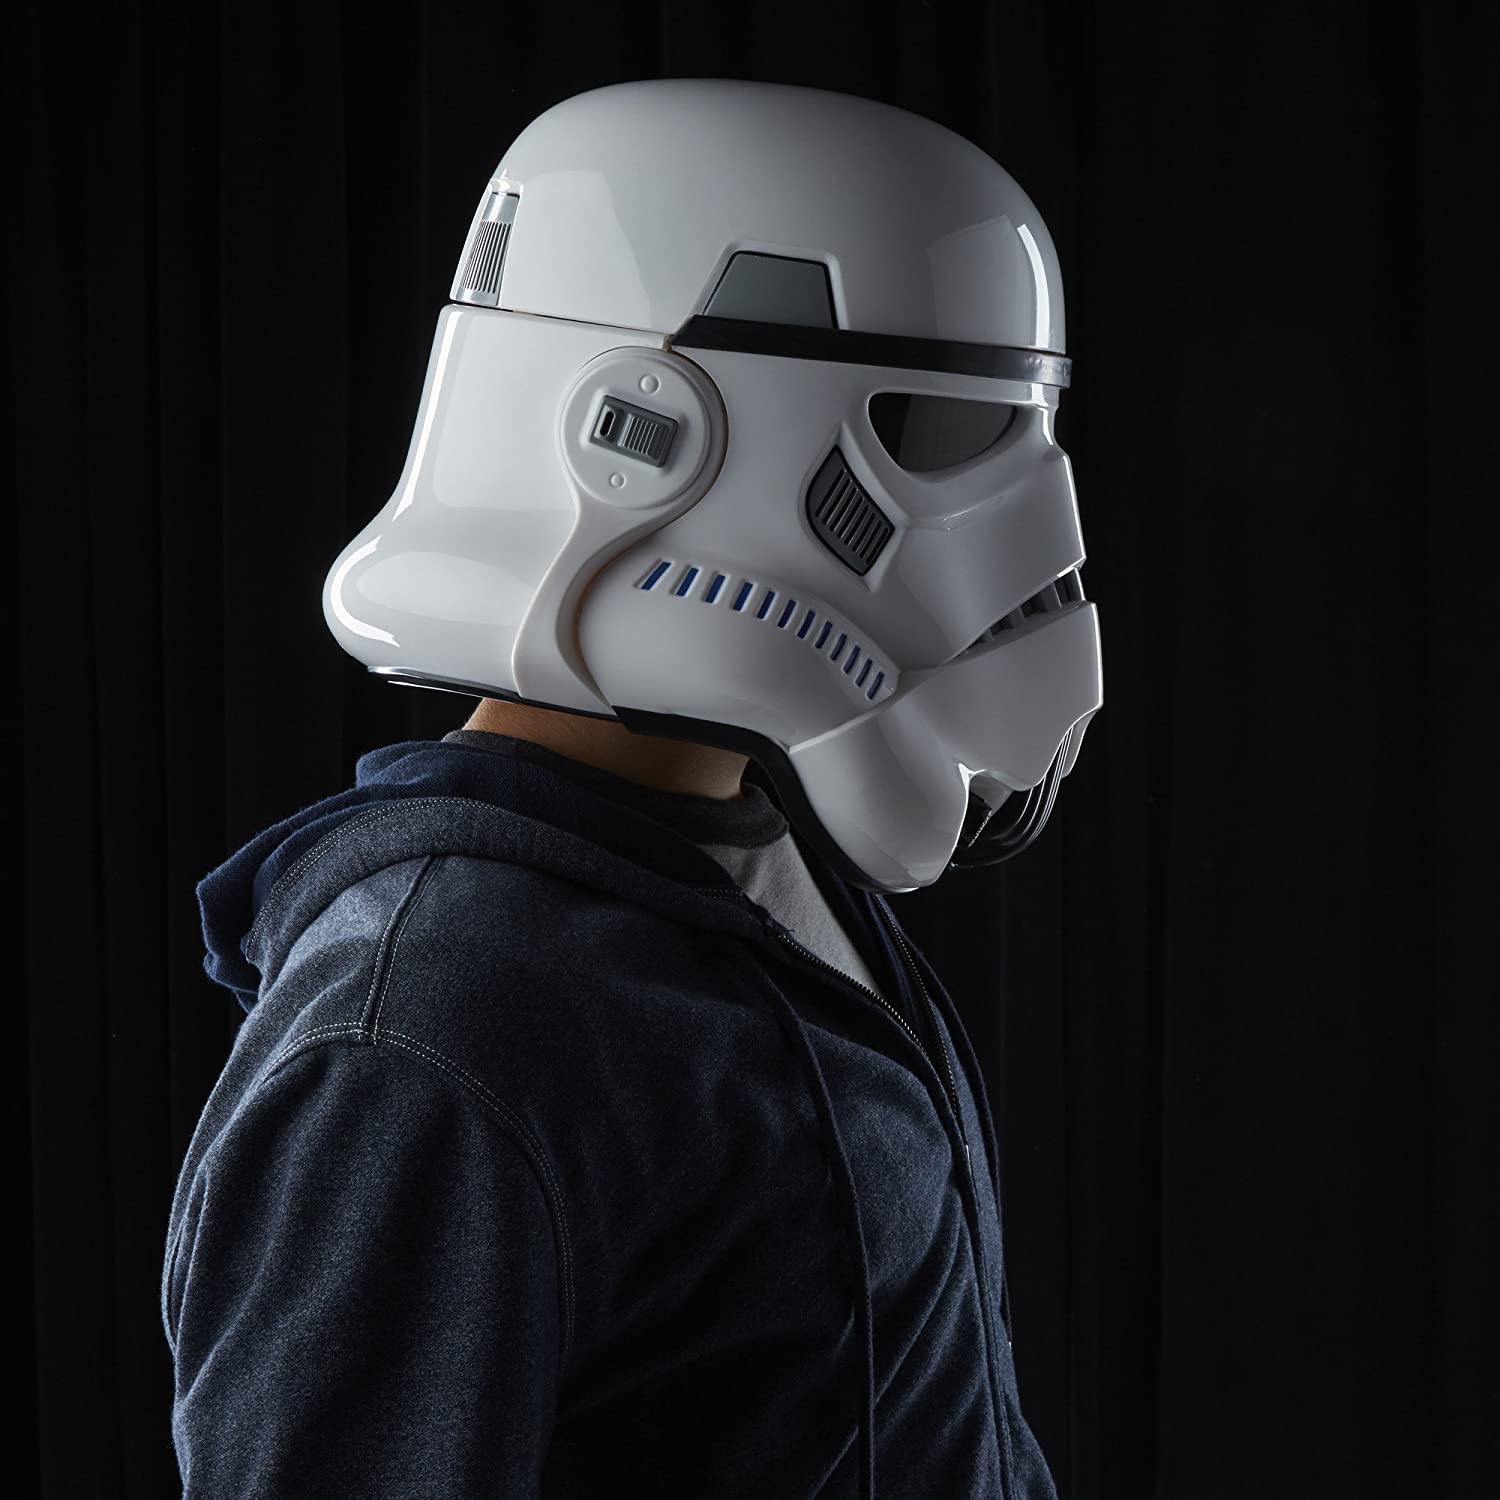 Star Wars Rogue One The Black Series Imperial Stormtrooper voix  électronique changeur Casque - Boutique en ligne 100% fiable.